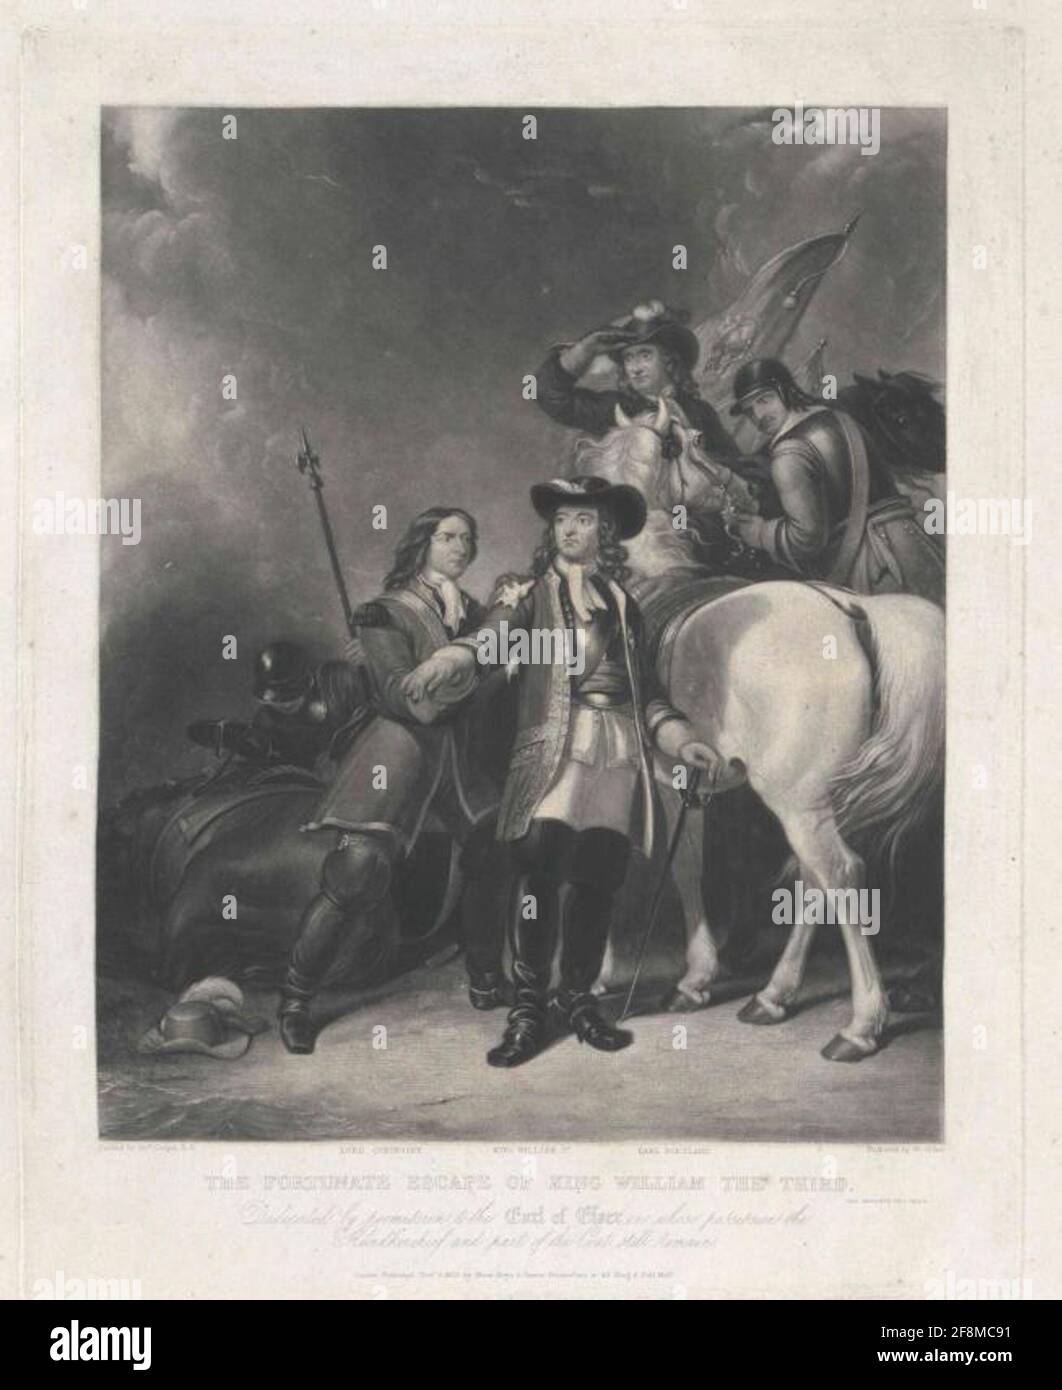 Guglielmo III, Principe d'Orania, la felice fuga del re d'Inghilterra Wilhelm il giorno prima della battaglia a Boyne [10. Luglio 1690]: In un'esplorazione era caduto in un pericolo di morte, come colpi nemici ha preso il suo compagno e lo ha ferito sulla spalla. Due nobili seguaci assicurano il salvataggio del re nascente: Lord Coningsby è ancora la ferita con il suo fazzoletto sopra Wilhelm's Rock, il conte Portland e un vettore di bandiera a cavallo cercare; lasciato nella foto un cavallo caduto, prima di un cappello sul pavimento; Vapore in polvere sullo sfondo; in fondo al bordo di tre nomi personali, designati Foto Stock